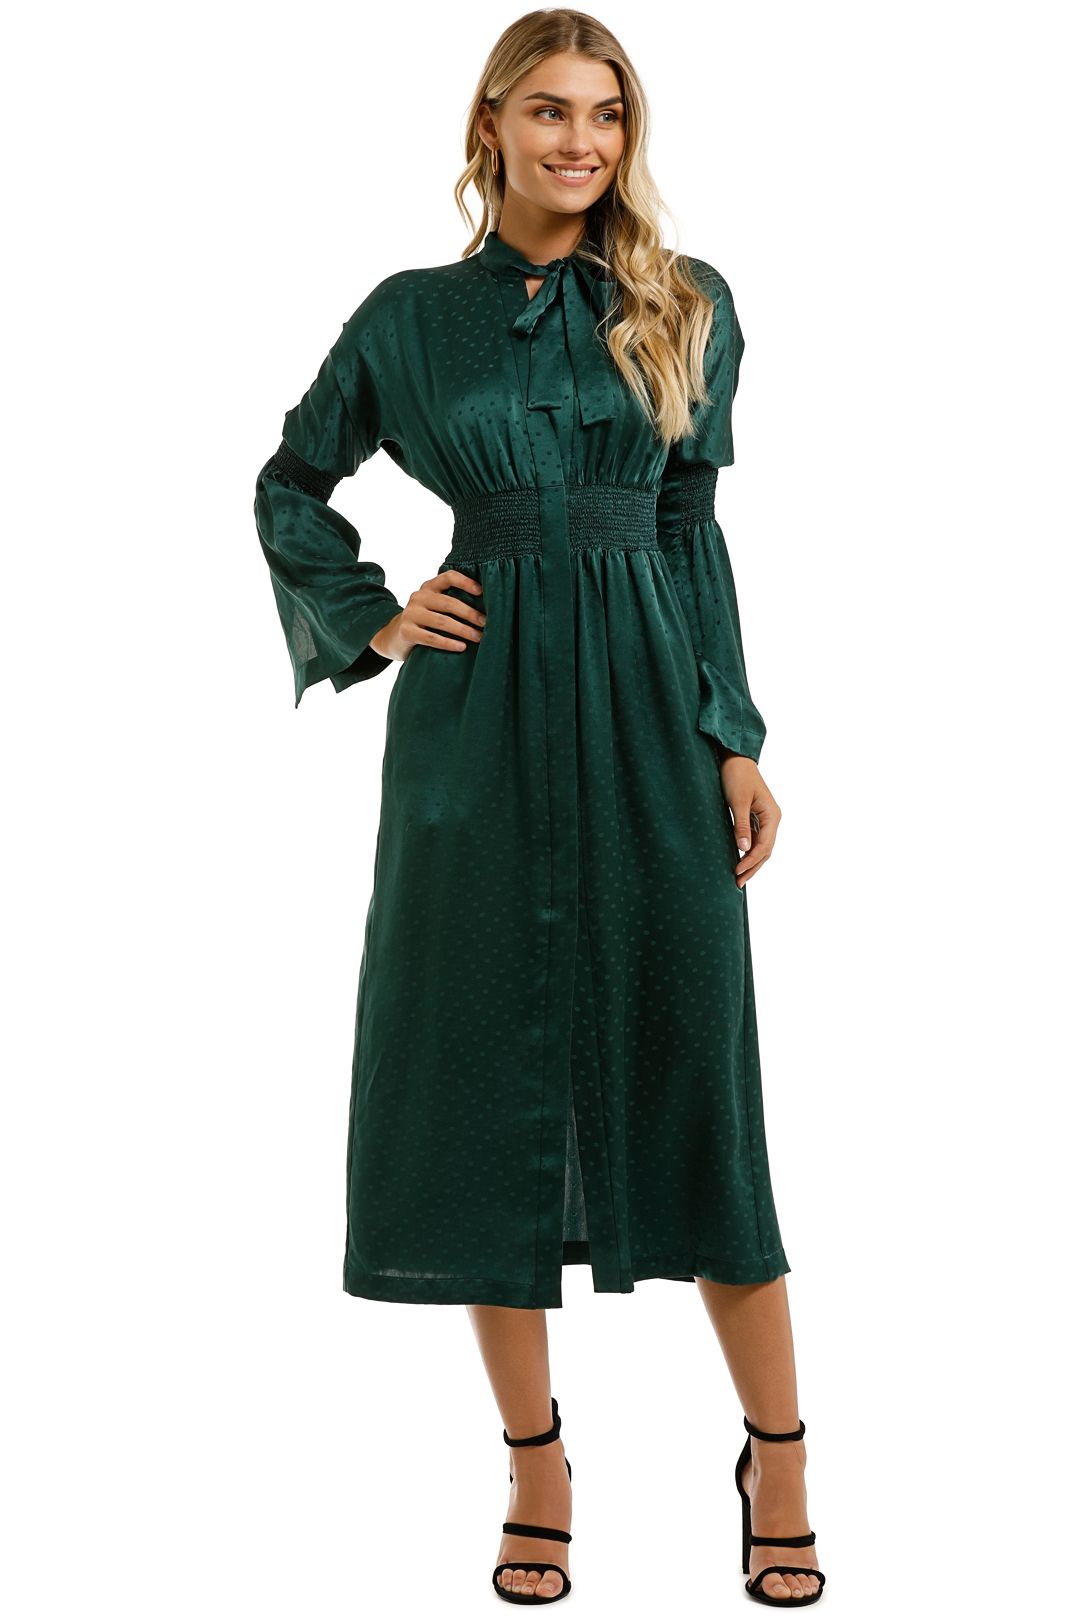 KITX-Essence-Spot-Shirred-Dress-Emerald-Front